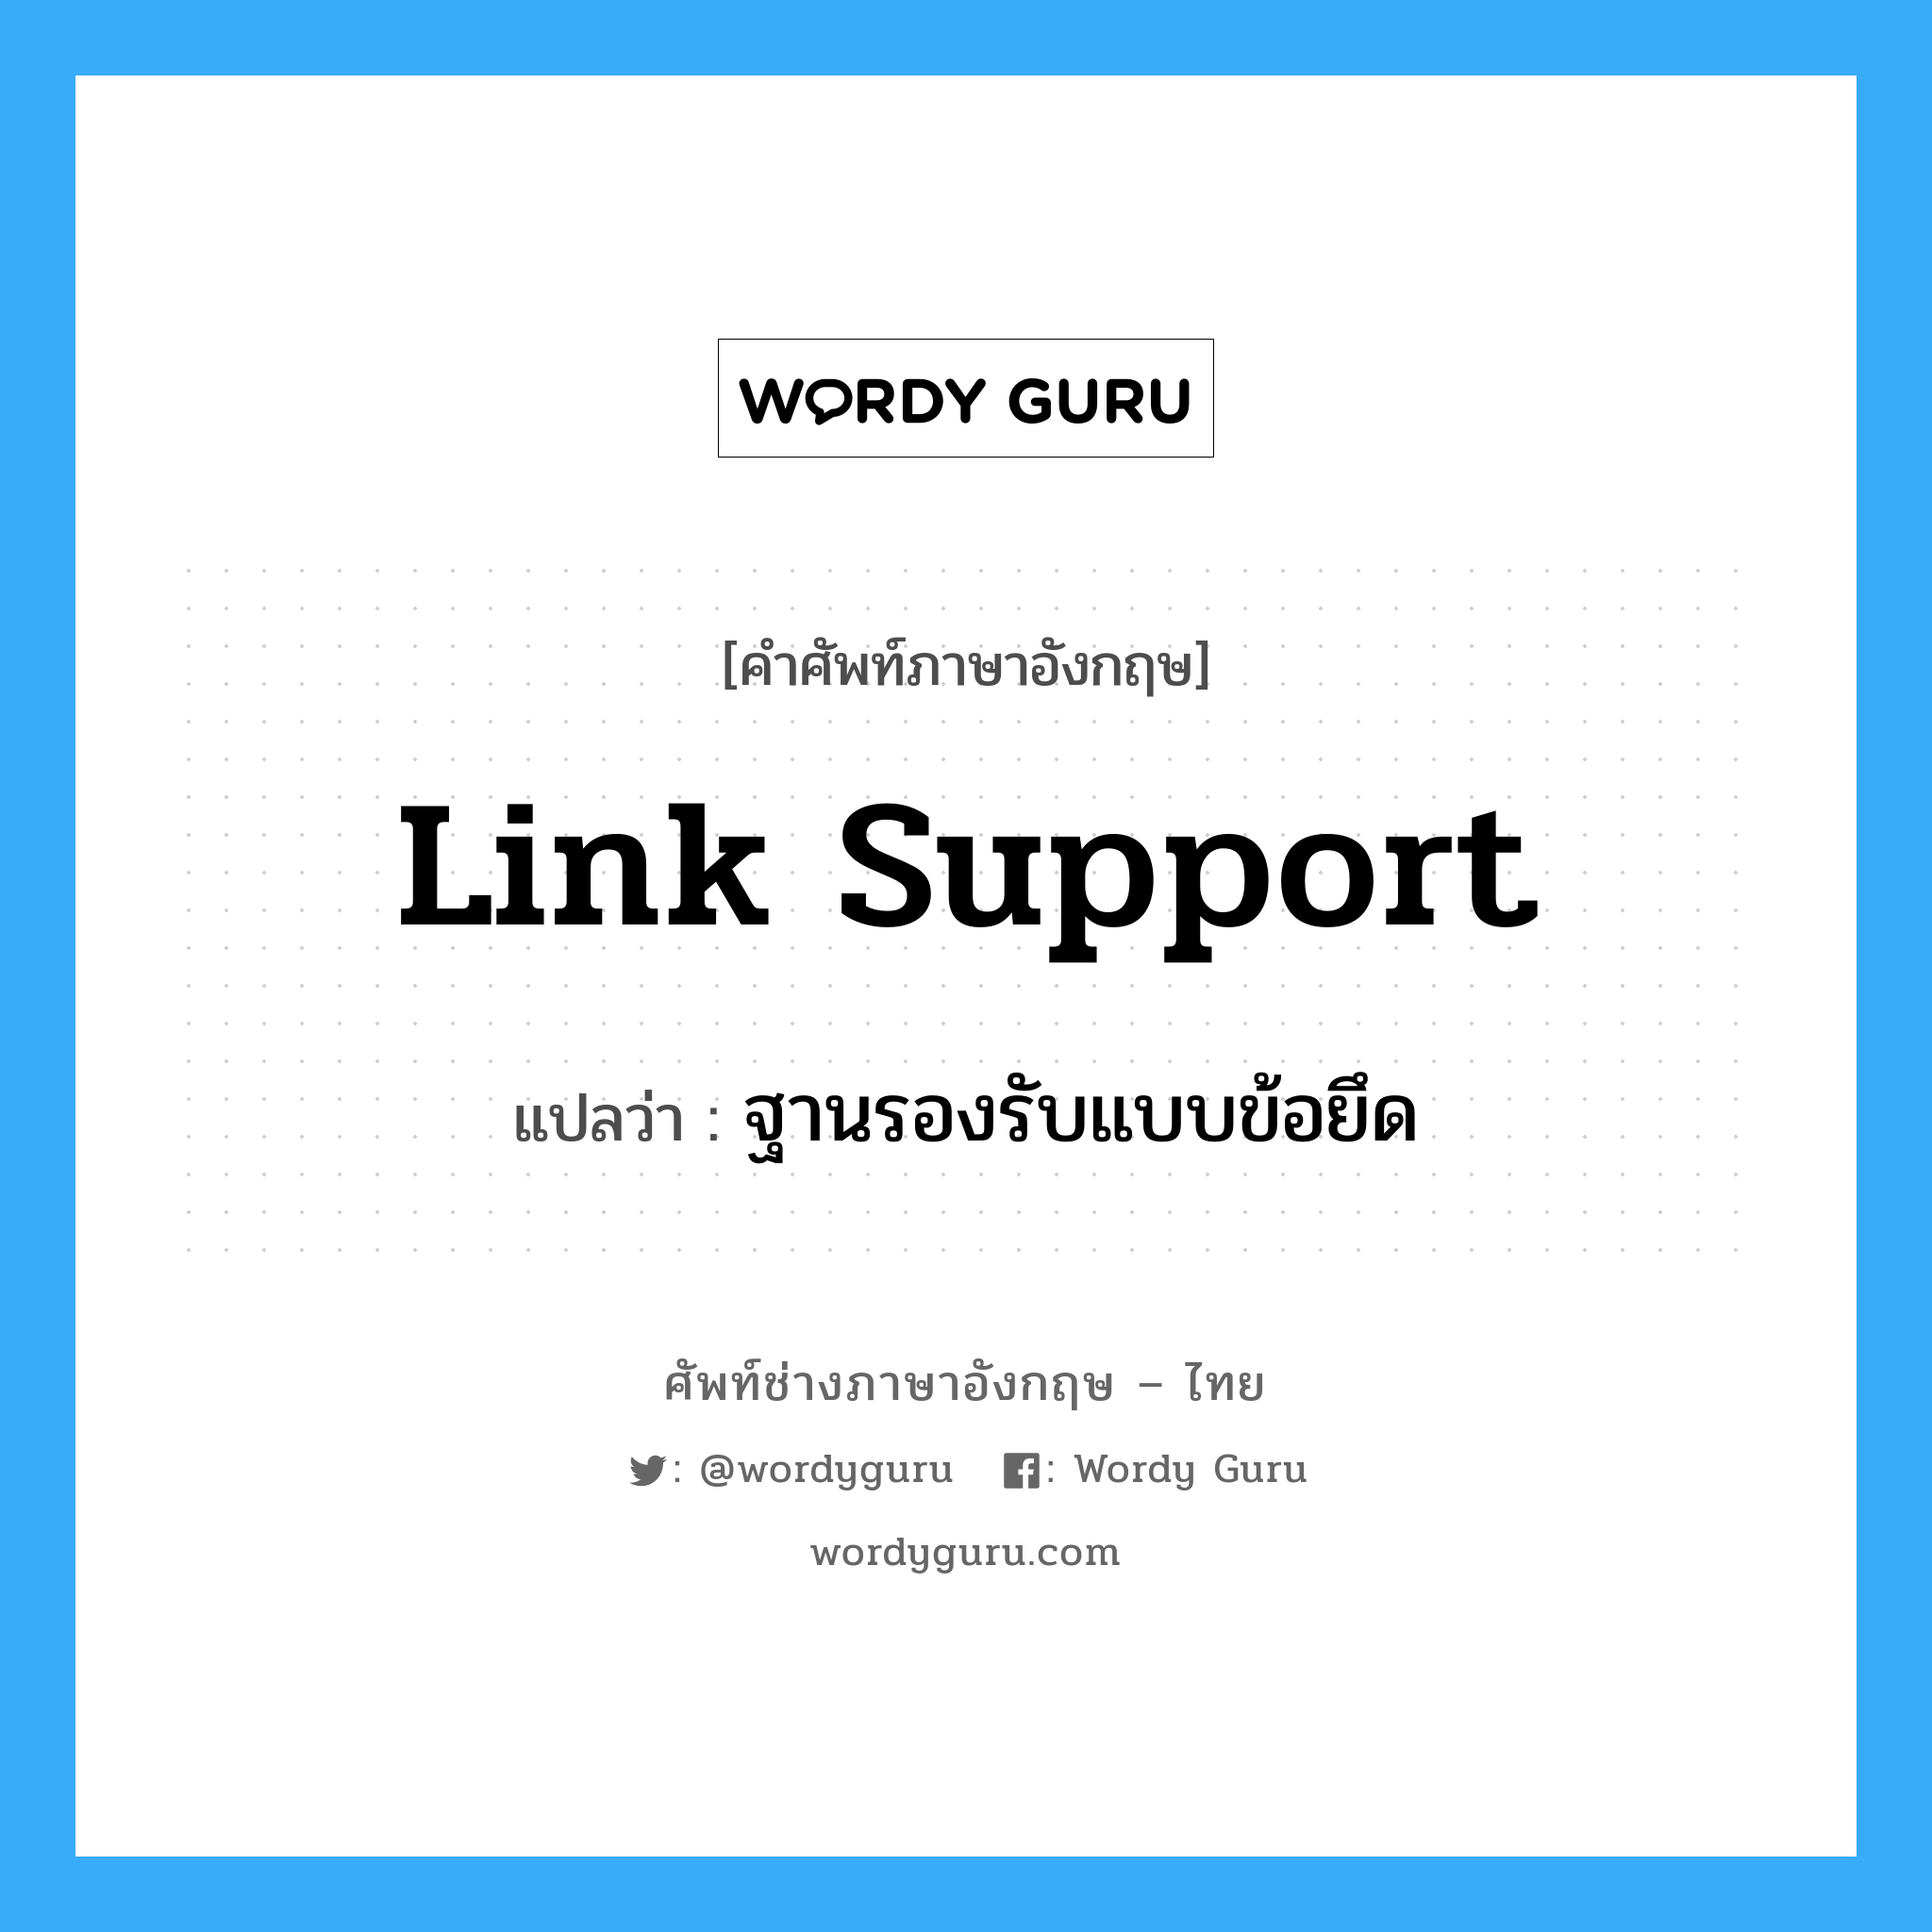 ฐานรองรับแบบข้อยึด ภาษาอังกฤษ?, คำศัพท์ช่างภาษาอังกฤษ - ไทย ฐานรองรับแบบข้อยึด คำศัพท์ภาษาอังกฤษ ฐานรองรับแบบข้อยึด แปลว่า Link Support